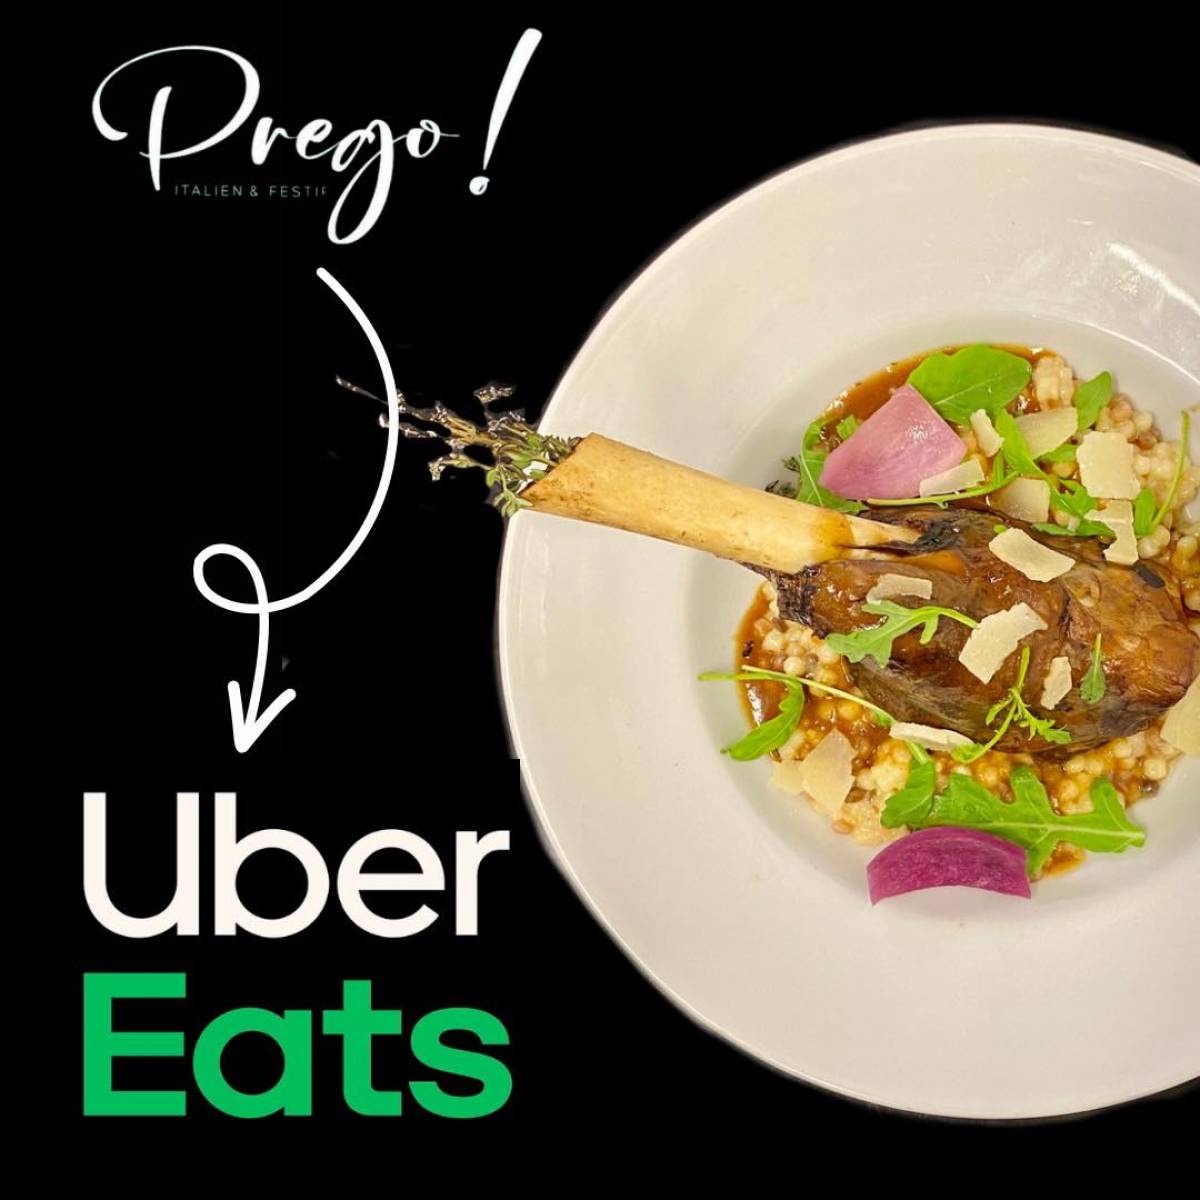 Découvrez la nouvelle carte d'hiver du Restaurant Prego, maintenant disponible sur Uber Eats à Bourgoin-Jallieu et aux alentours